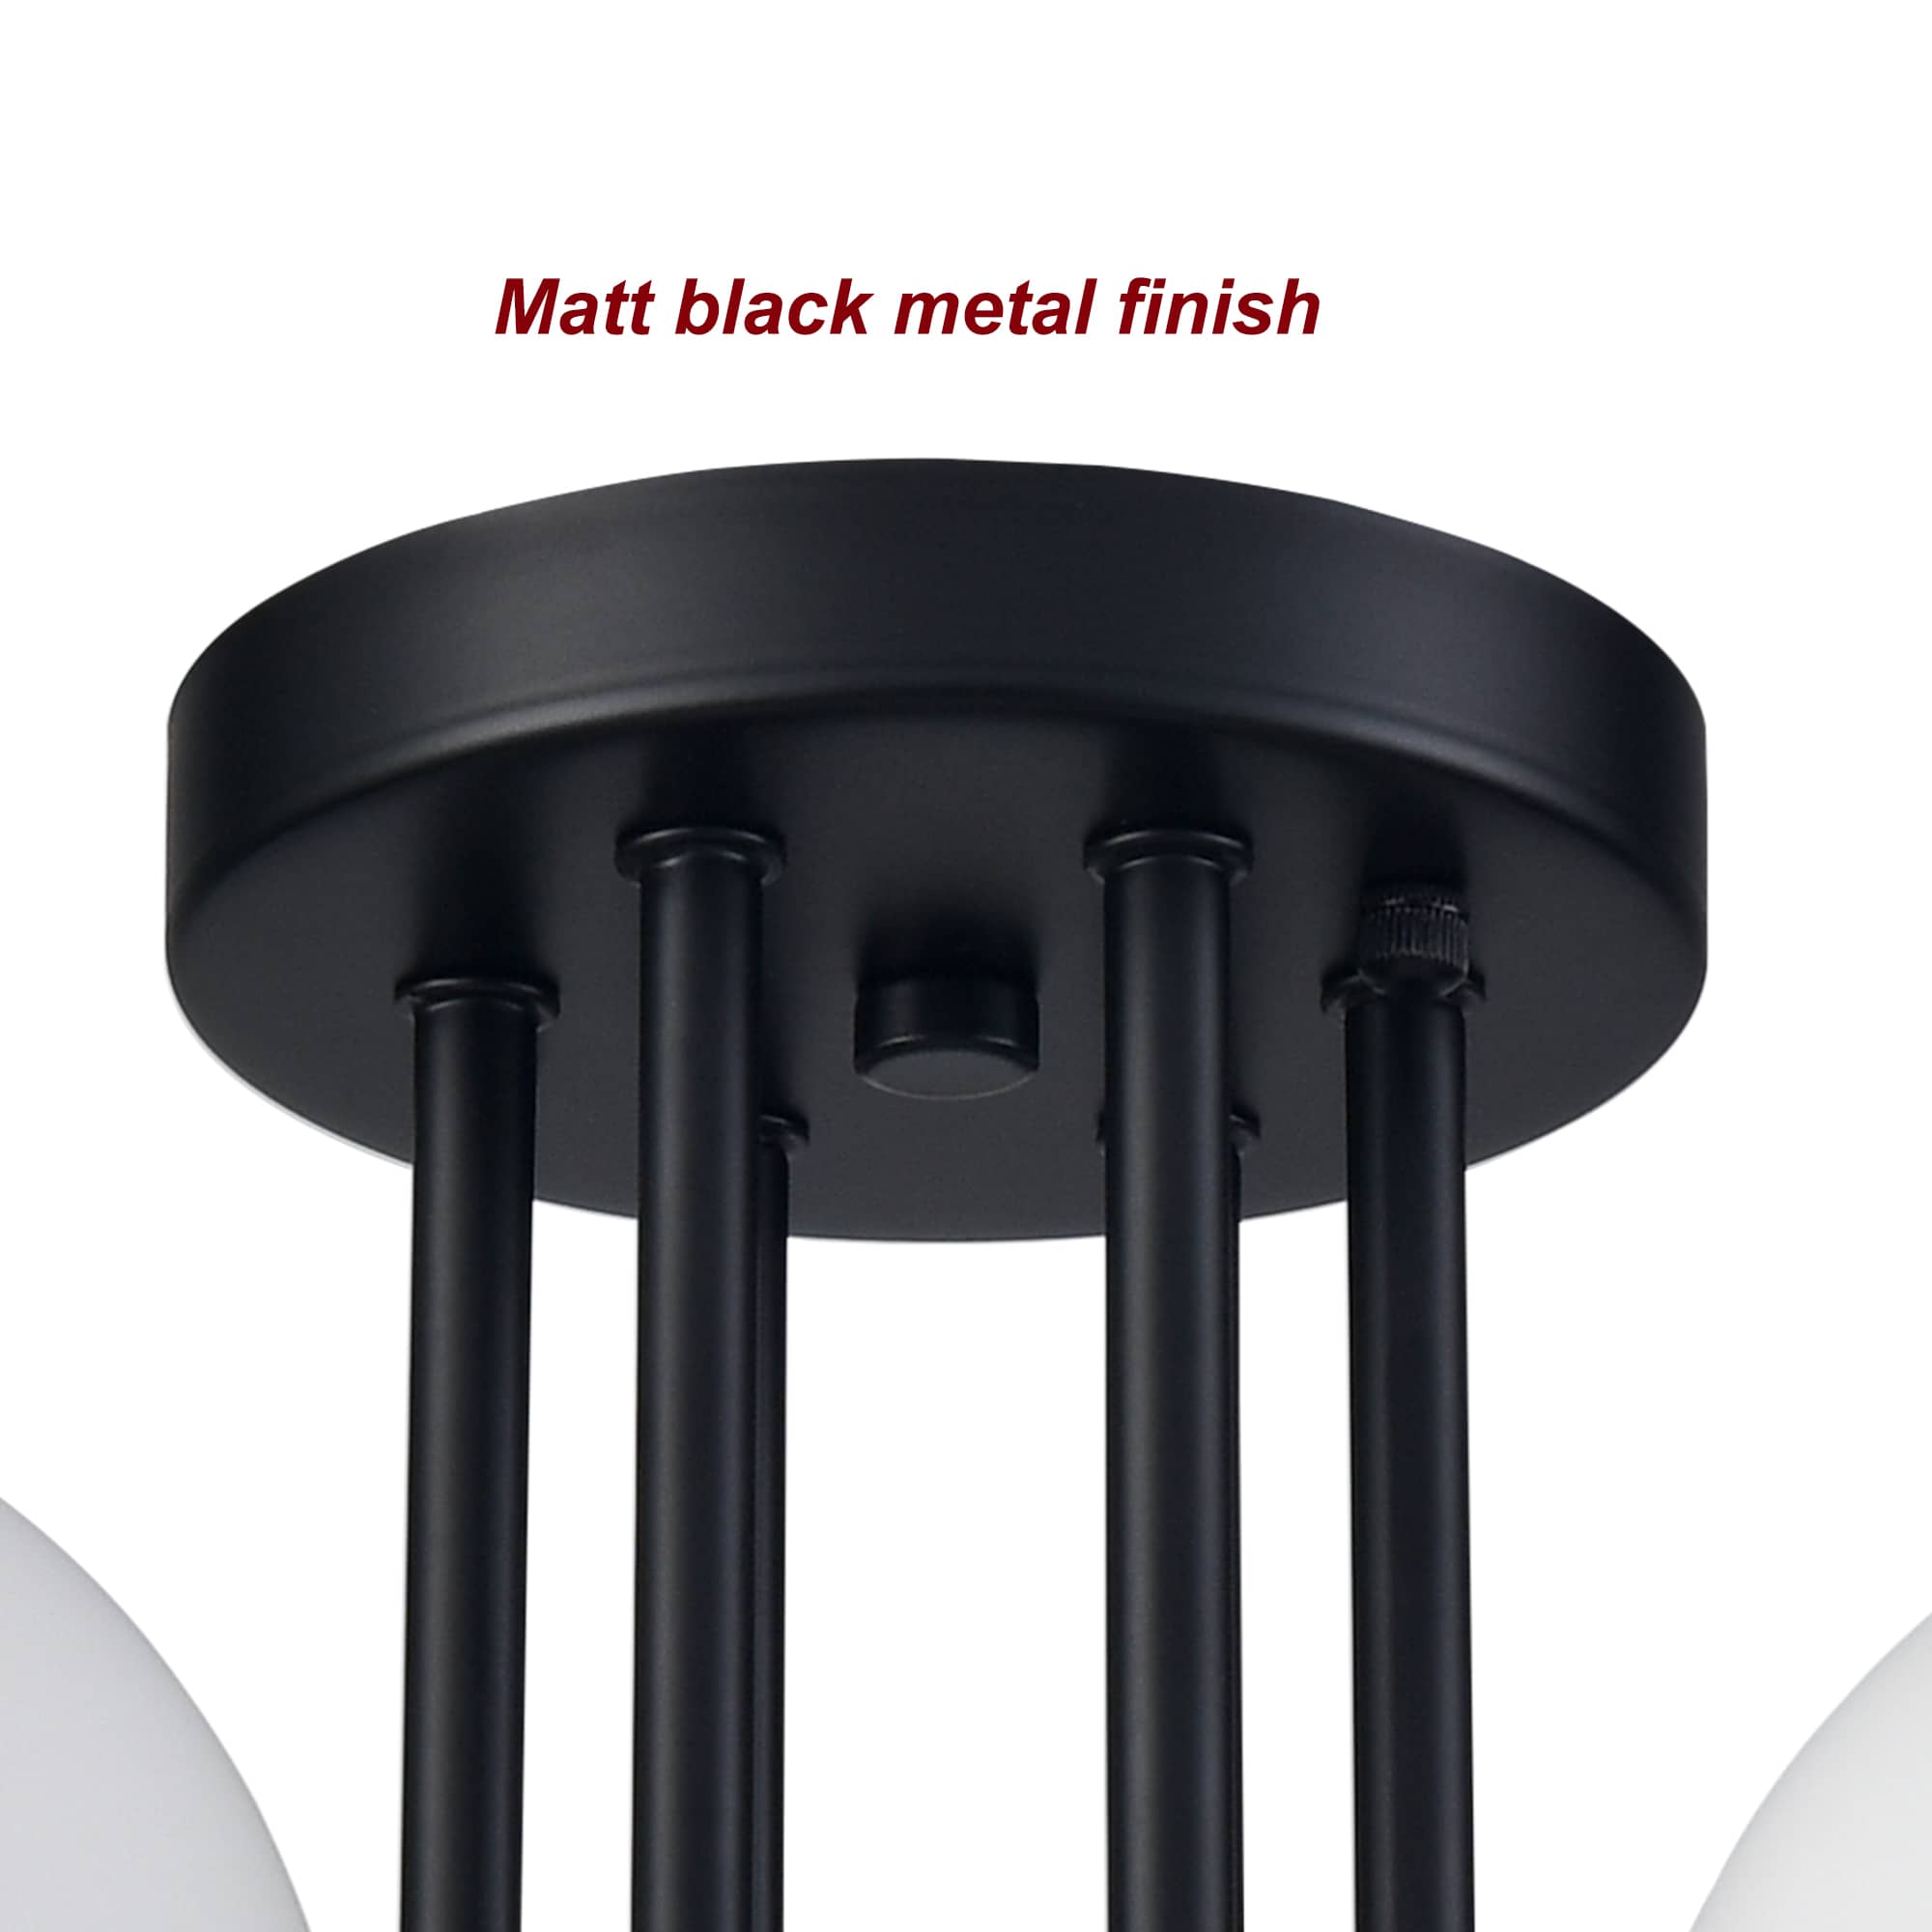 6-light Modern Globe Black Semi Flush Mount Ceiling Light Fixture for Bedroom